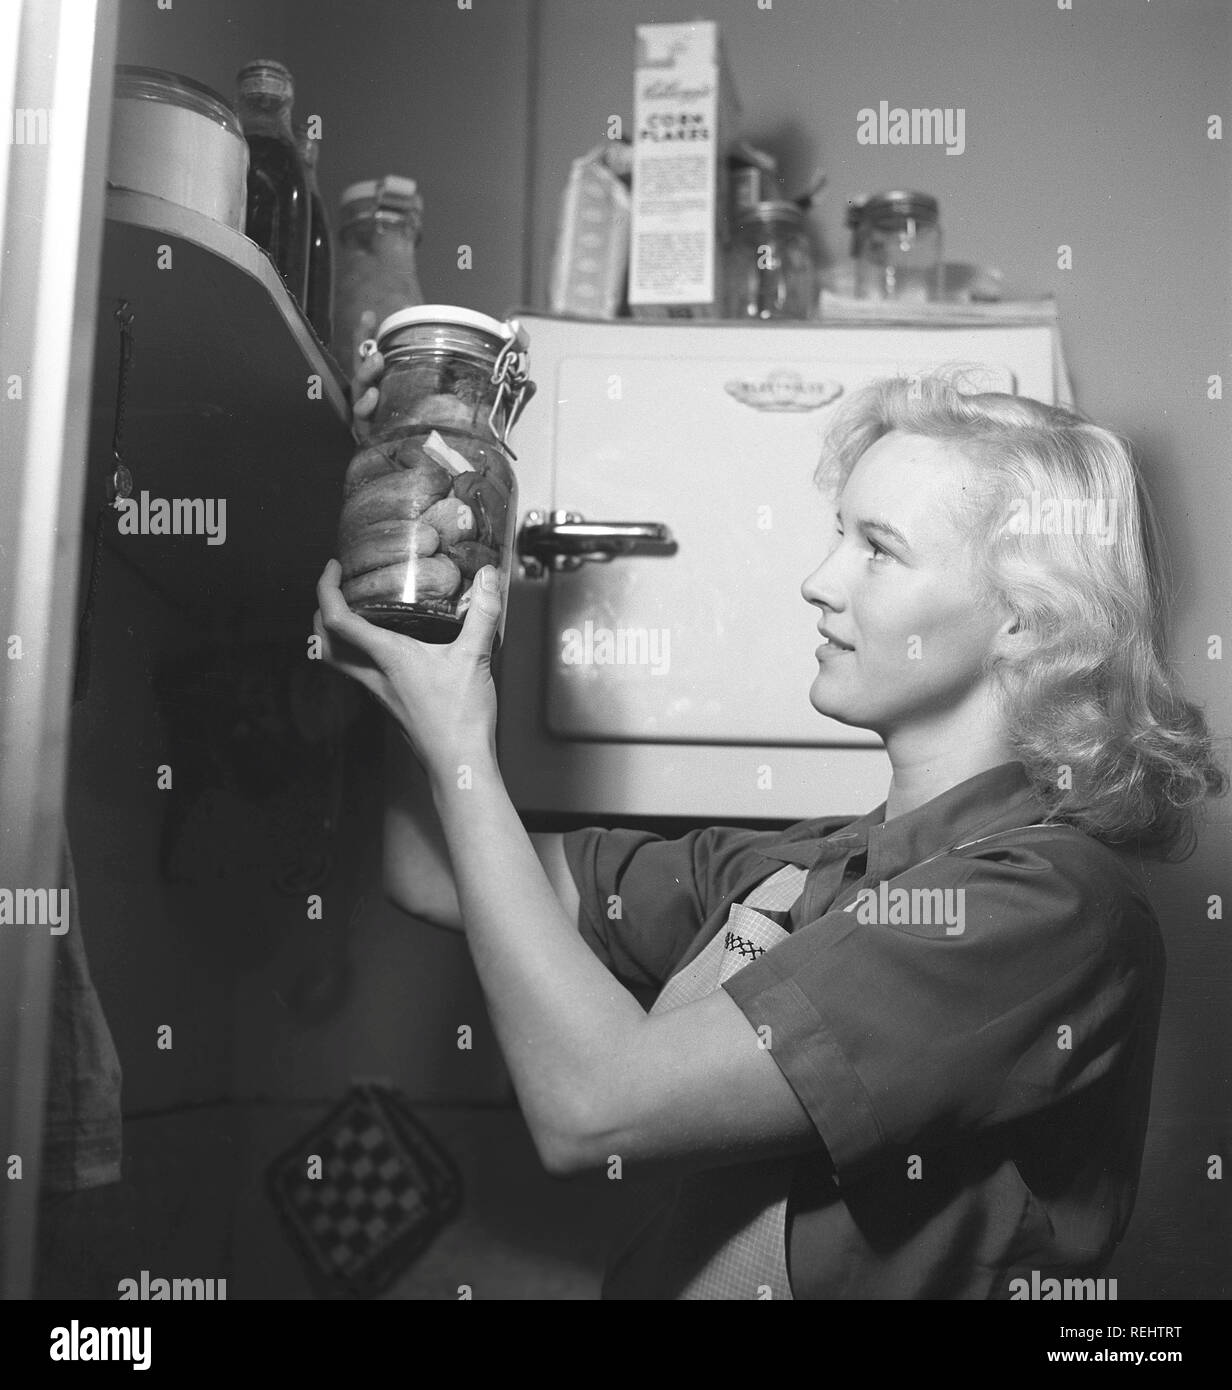 1940 praktische Tipps. Eine junge Frau zu Hause aussieht, wenn eine Glasflasche mit konservierten Gurken glücklich. Sie ist in der Küche in eine Schürze gekleidet. Es ist das Jahr 1940 und dem zweiten Weltkrieg los ist. Lebensmittel und andere Notwendigkeiten sind rationiert, daher eine eigene Versorgung mit Nahrungsmitteln notwendig war. Foto Kristoffersson 157-24 Stockfoto